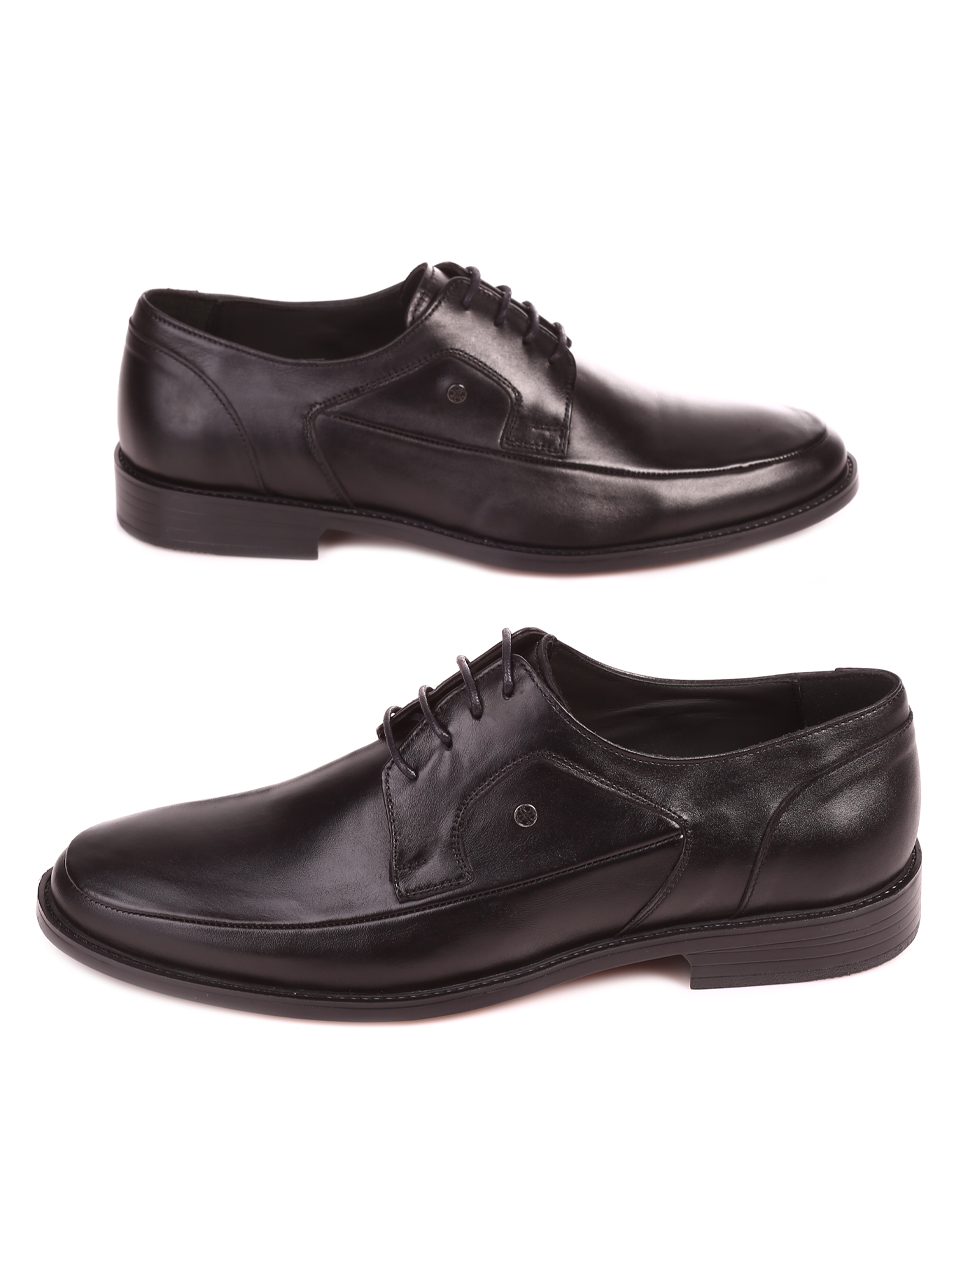 Елегантни мъжки обувки от естествена кожа 153-5833 black